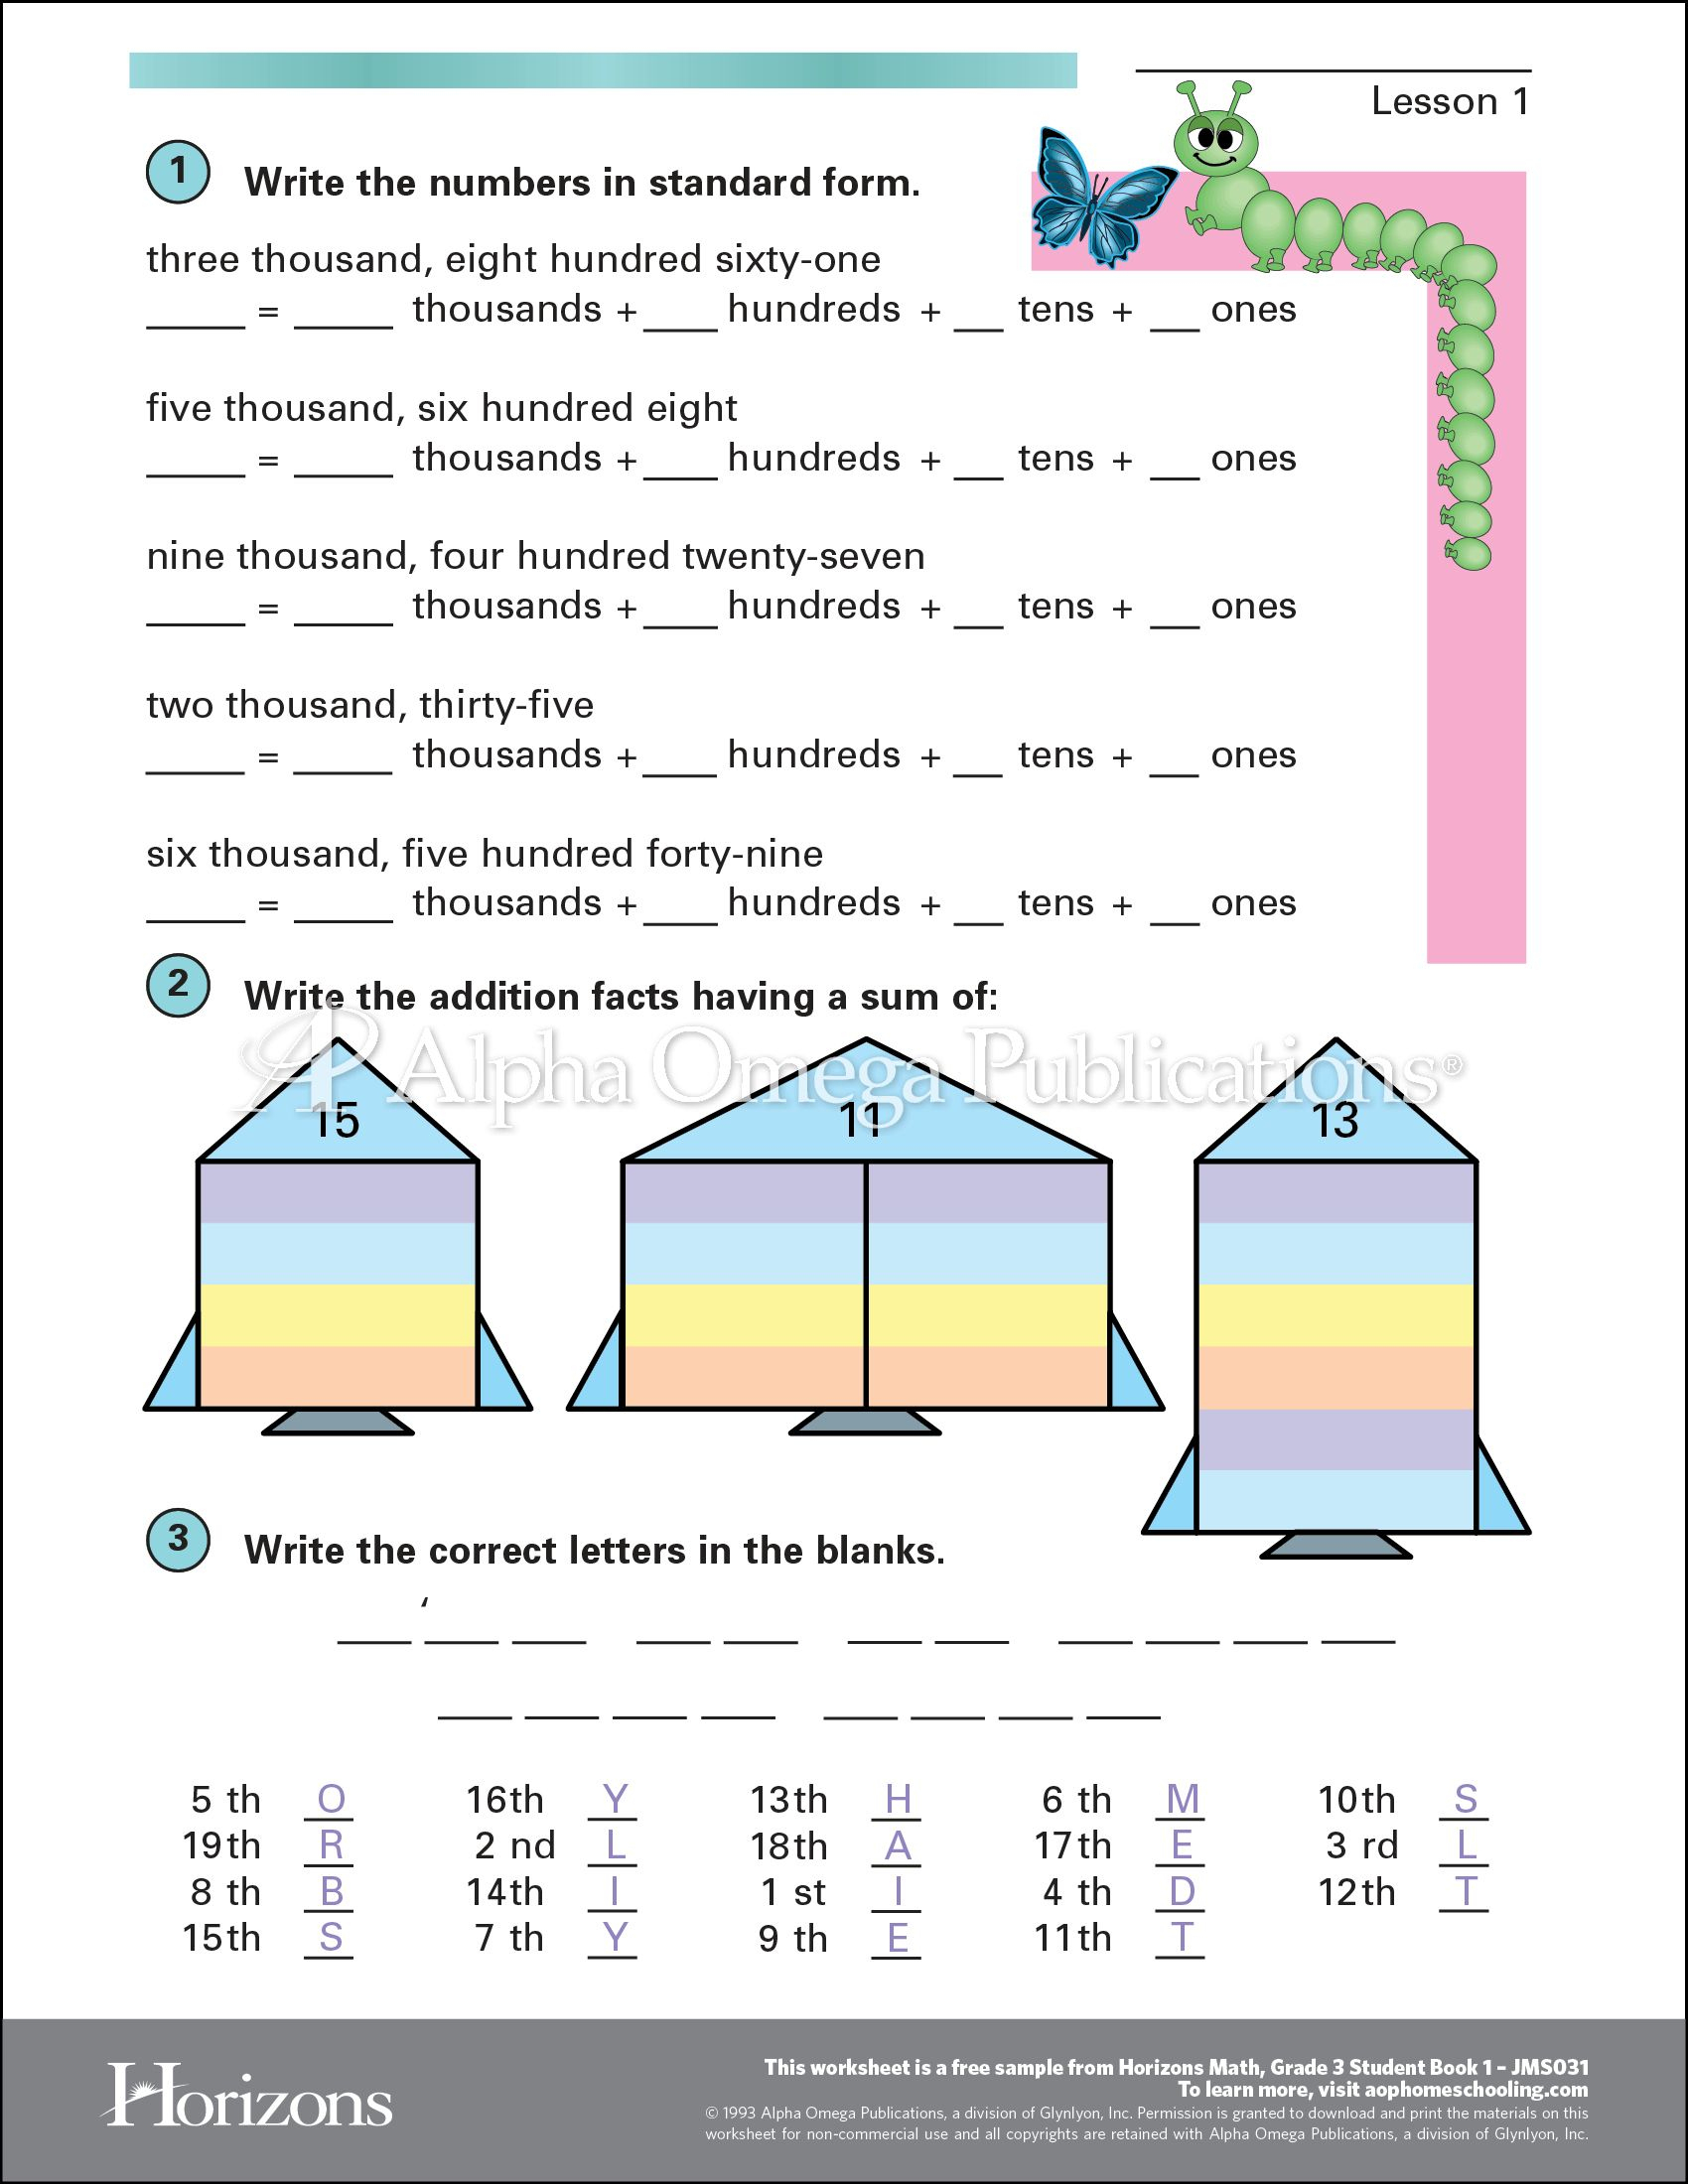 Aop Horizons Free Printable Worksheet Sample Page Download For - Free Homeschool Printable Worksheets